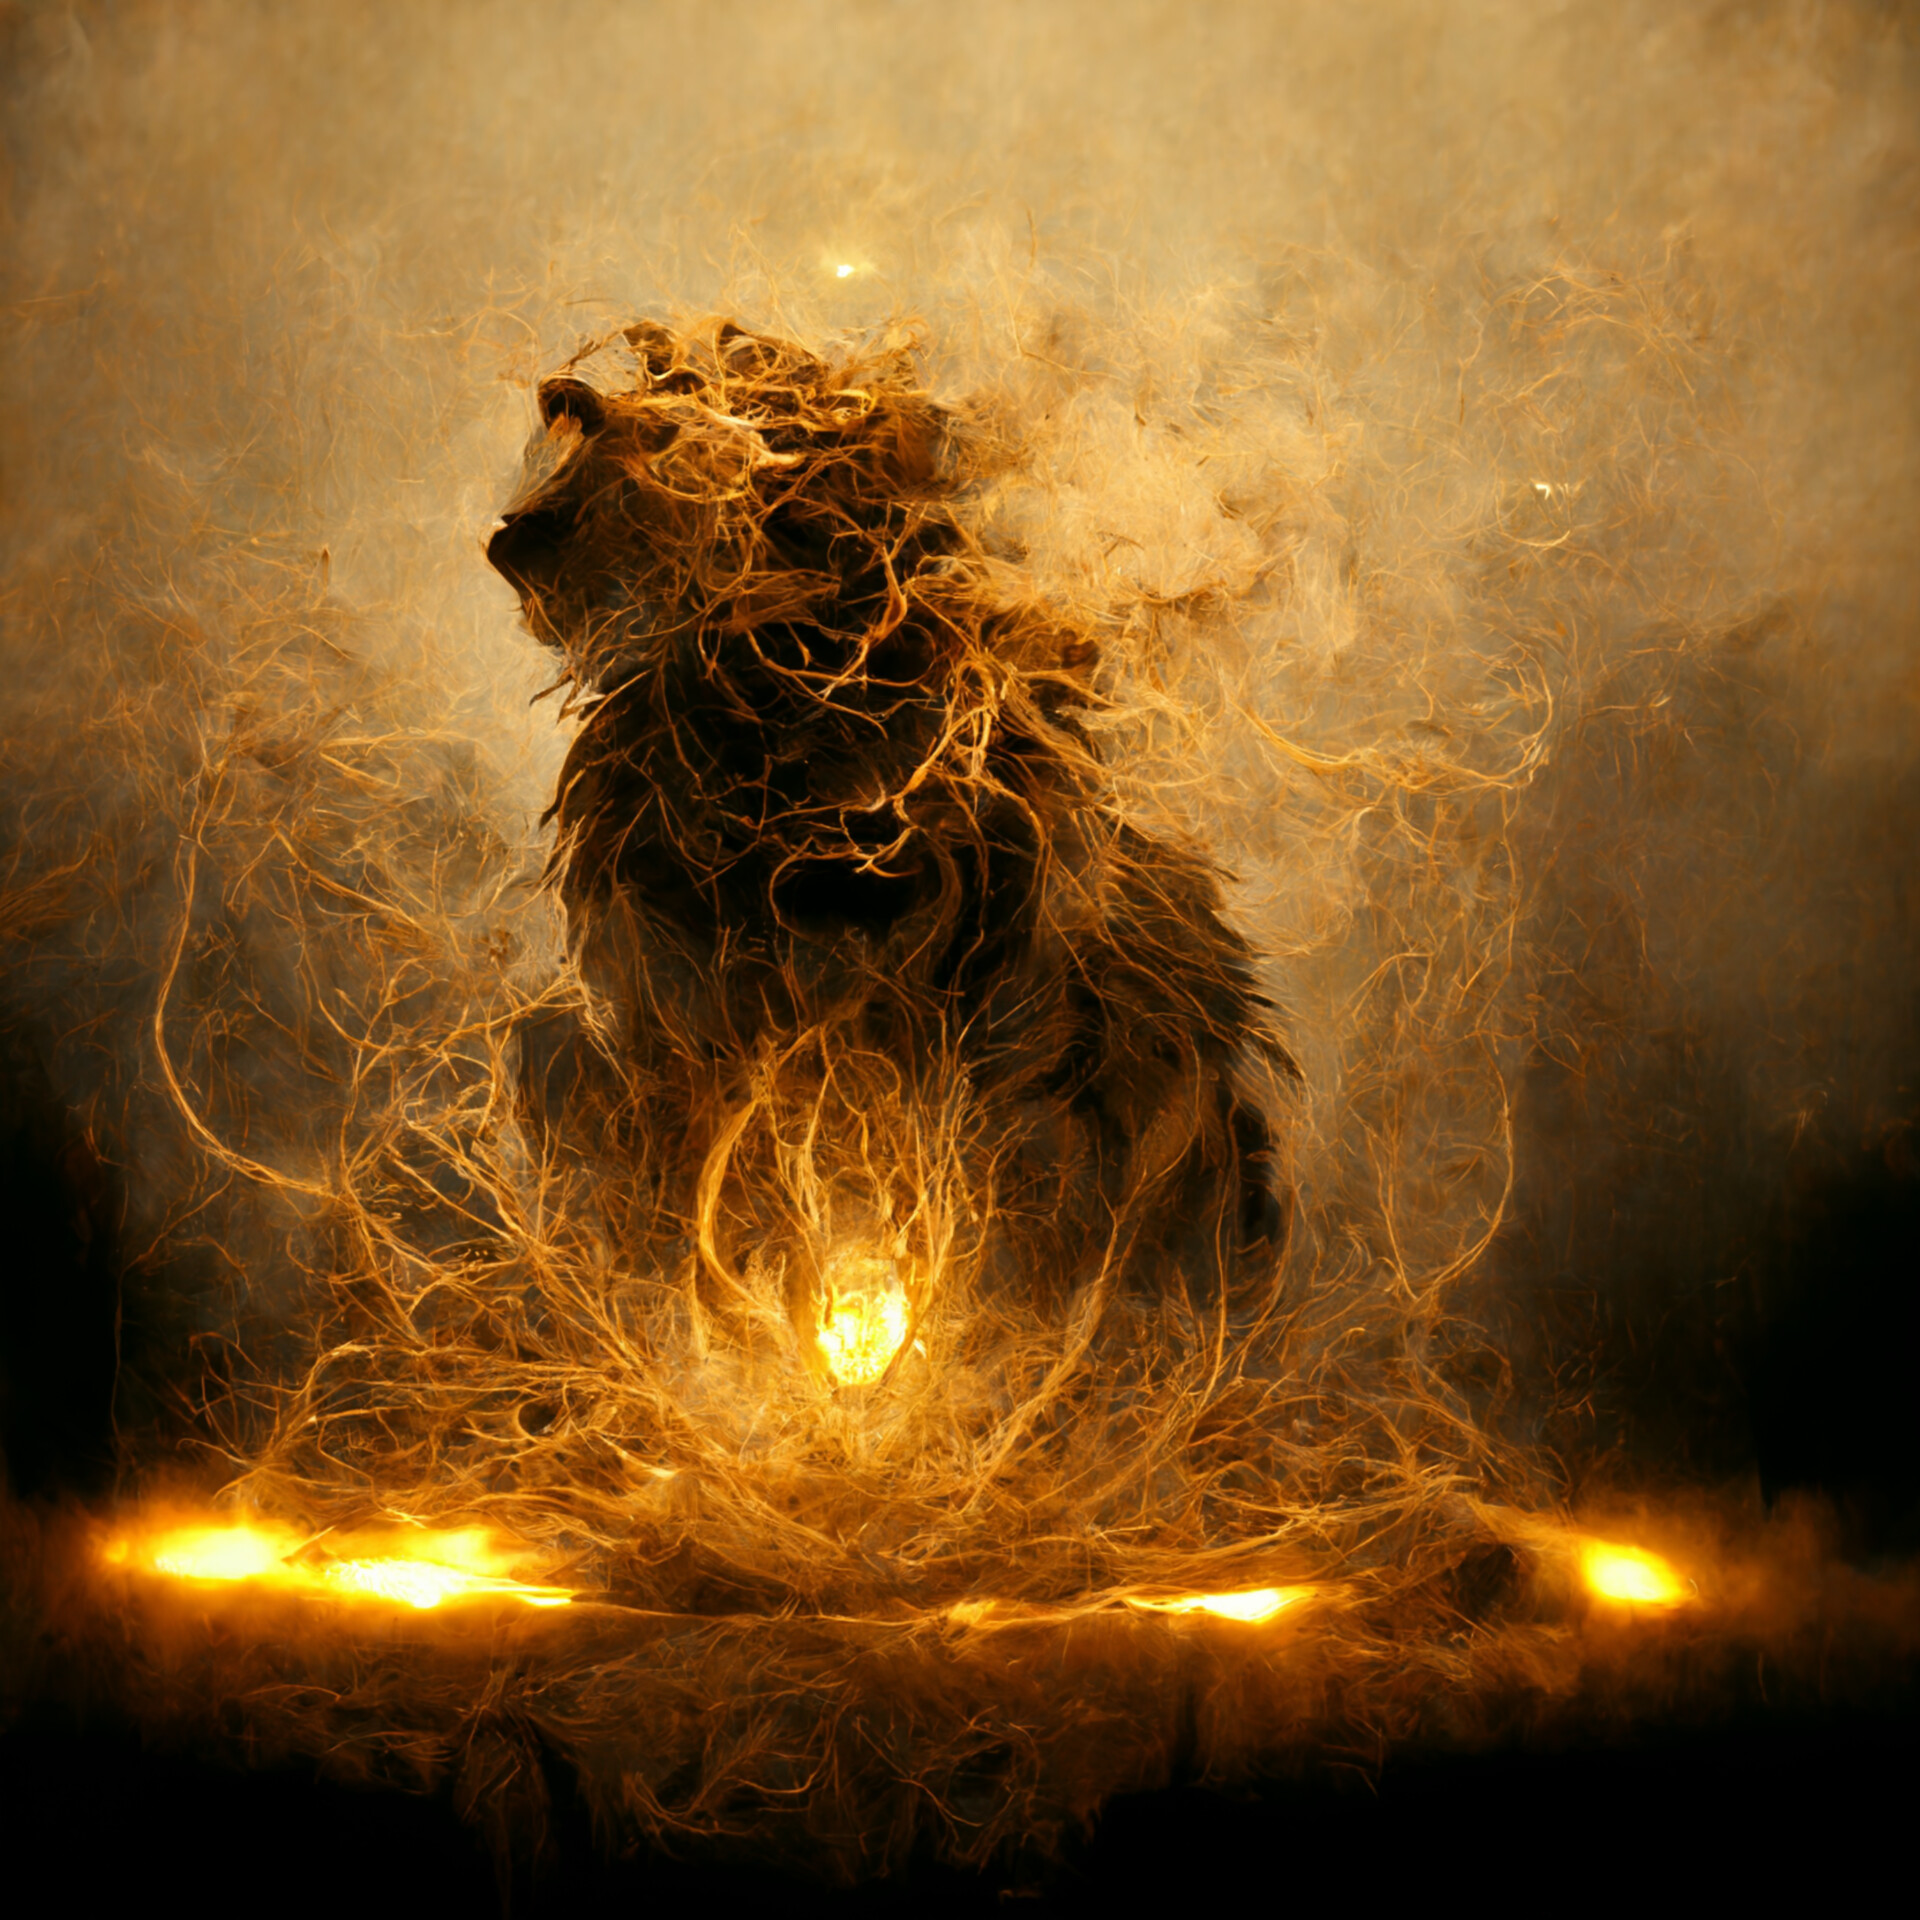 flaming lion